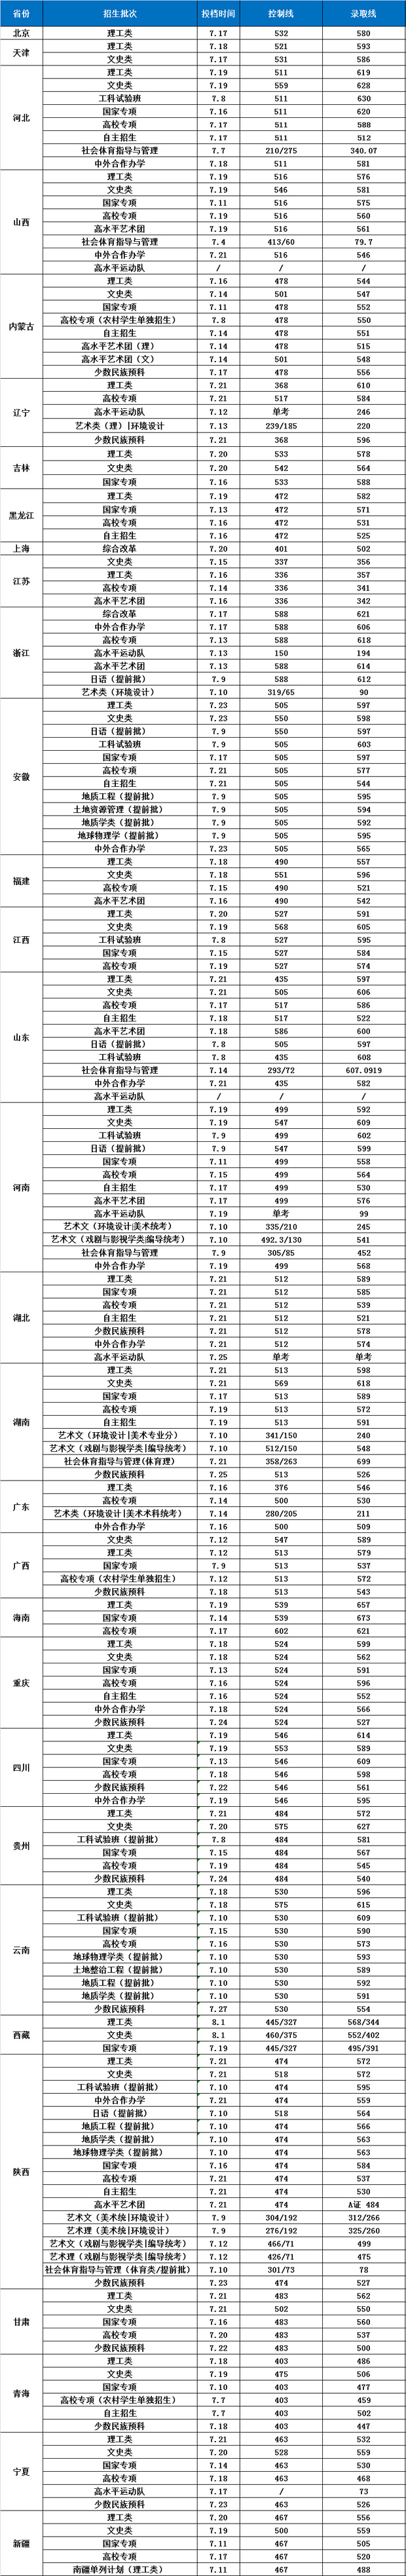 长安大学2018年分省分类型录取分数线